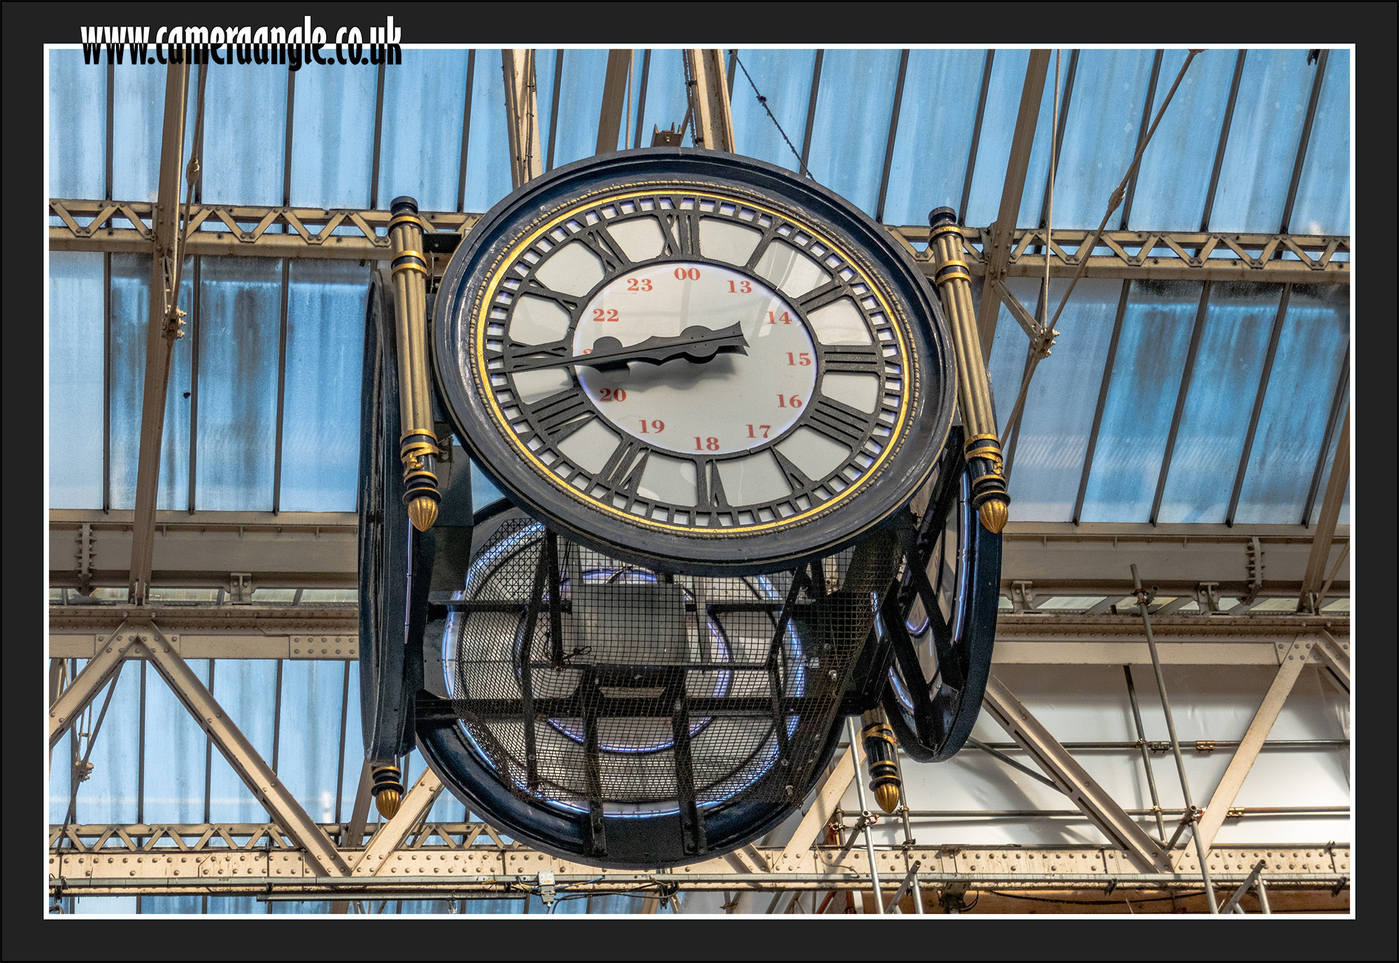 London Waterloo Clock
London Waterloo Clock
Keywords: London Waterloo Clock